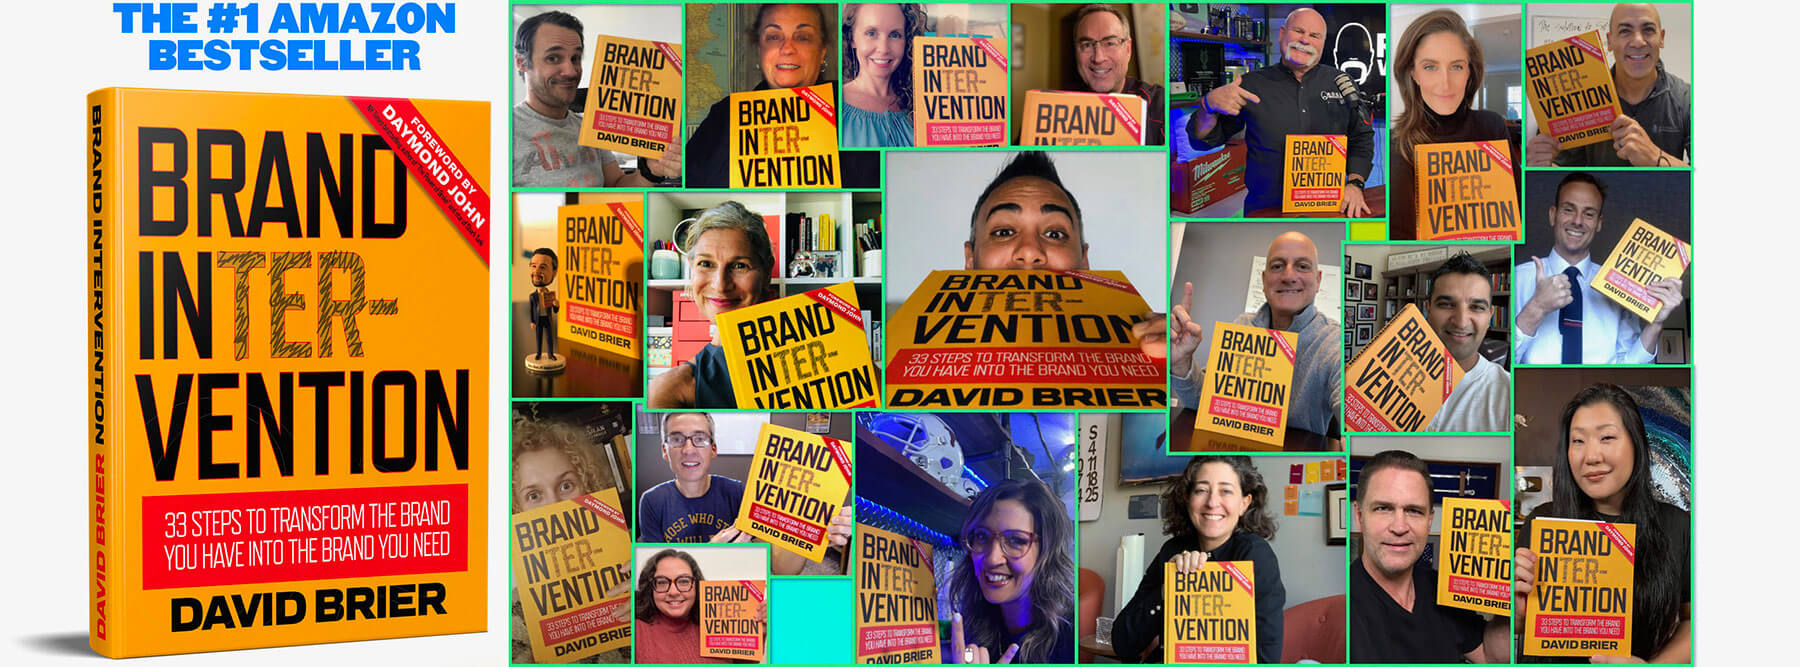 Brand Intervention readers worldwide, the bestseller written by David Brier